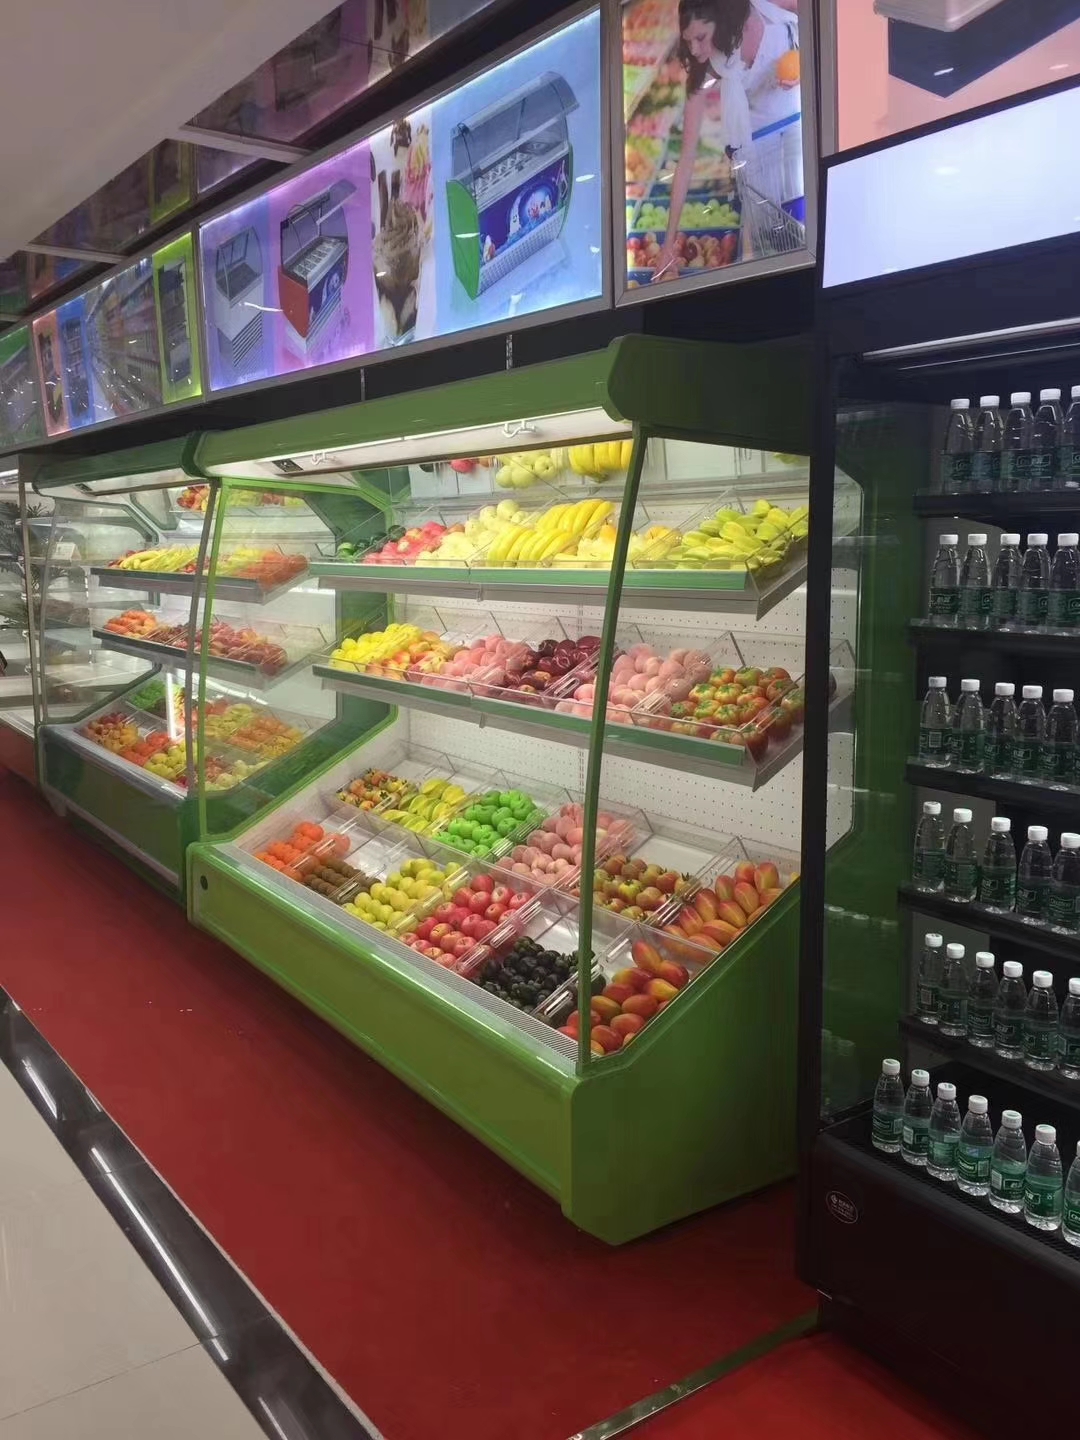 蔬菜冷藏柜 未来雪-W-FMG-12-水果保鲜柜 超市风幕柜 水果店风幕柜 商用冰箱展示柜冰柜 水果柜5